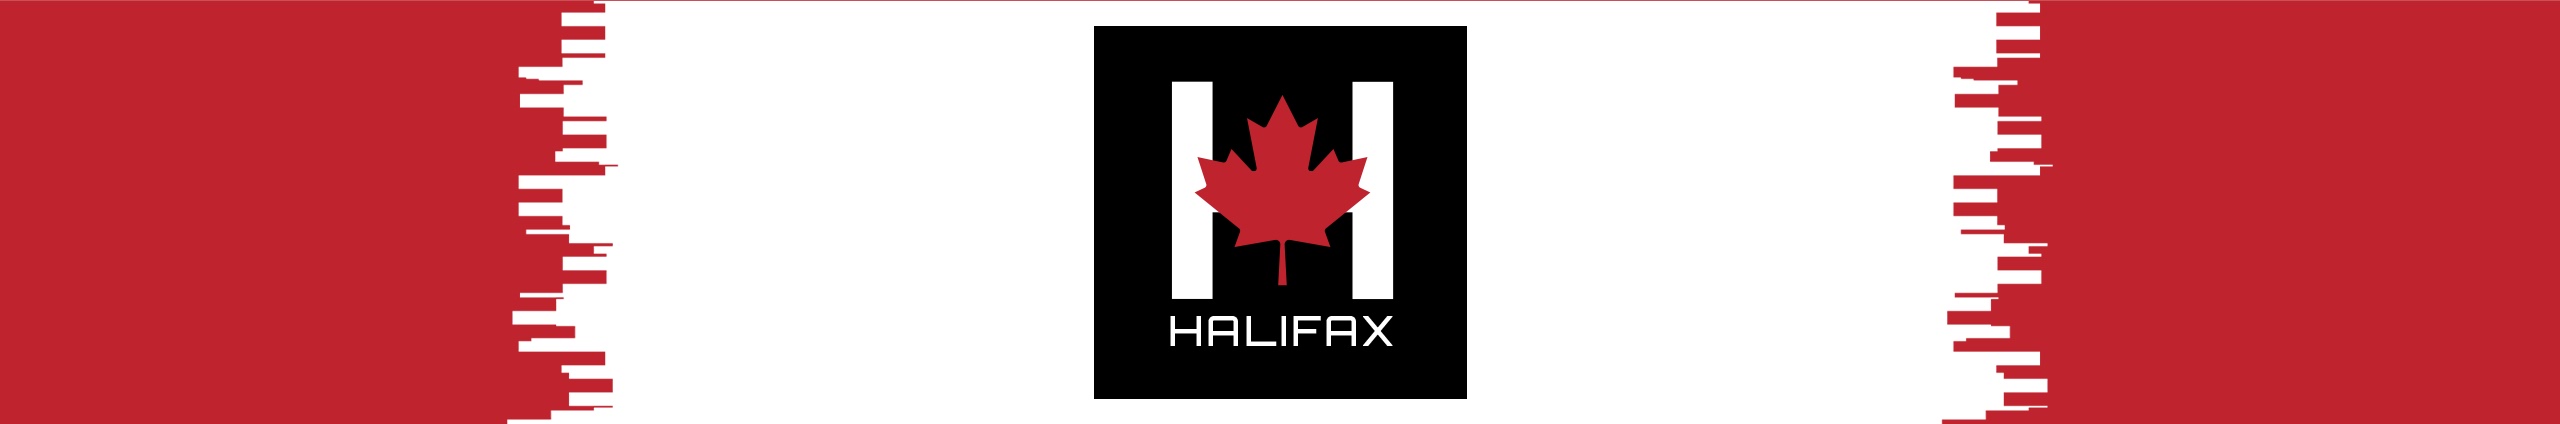 Halifax_banner